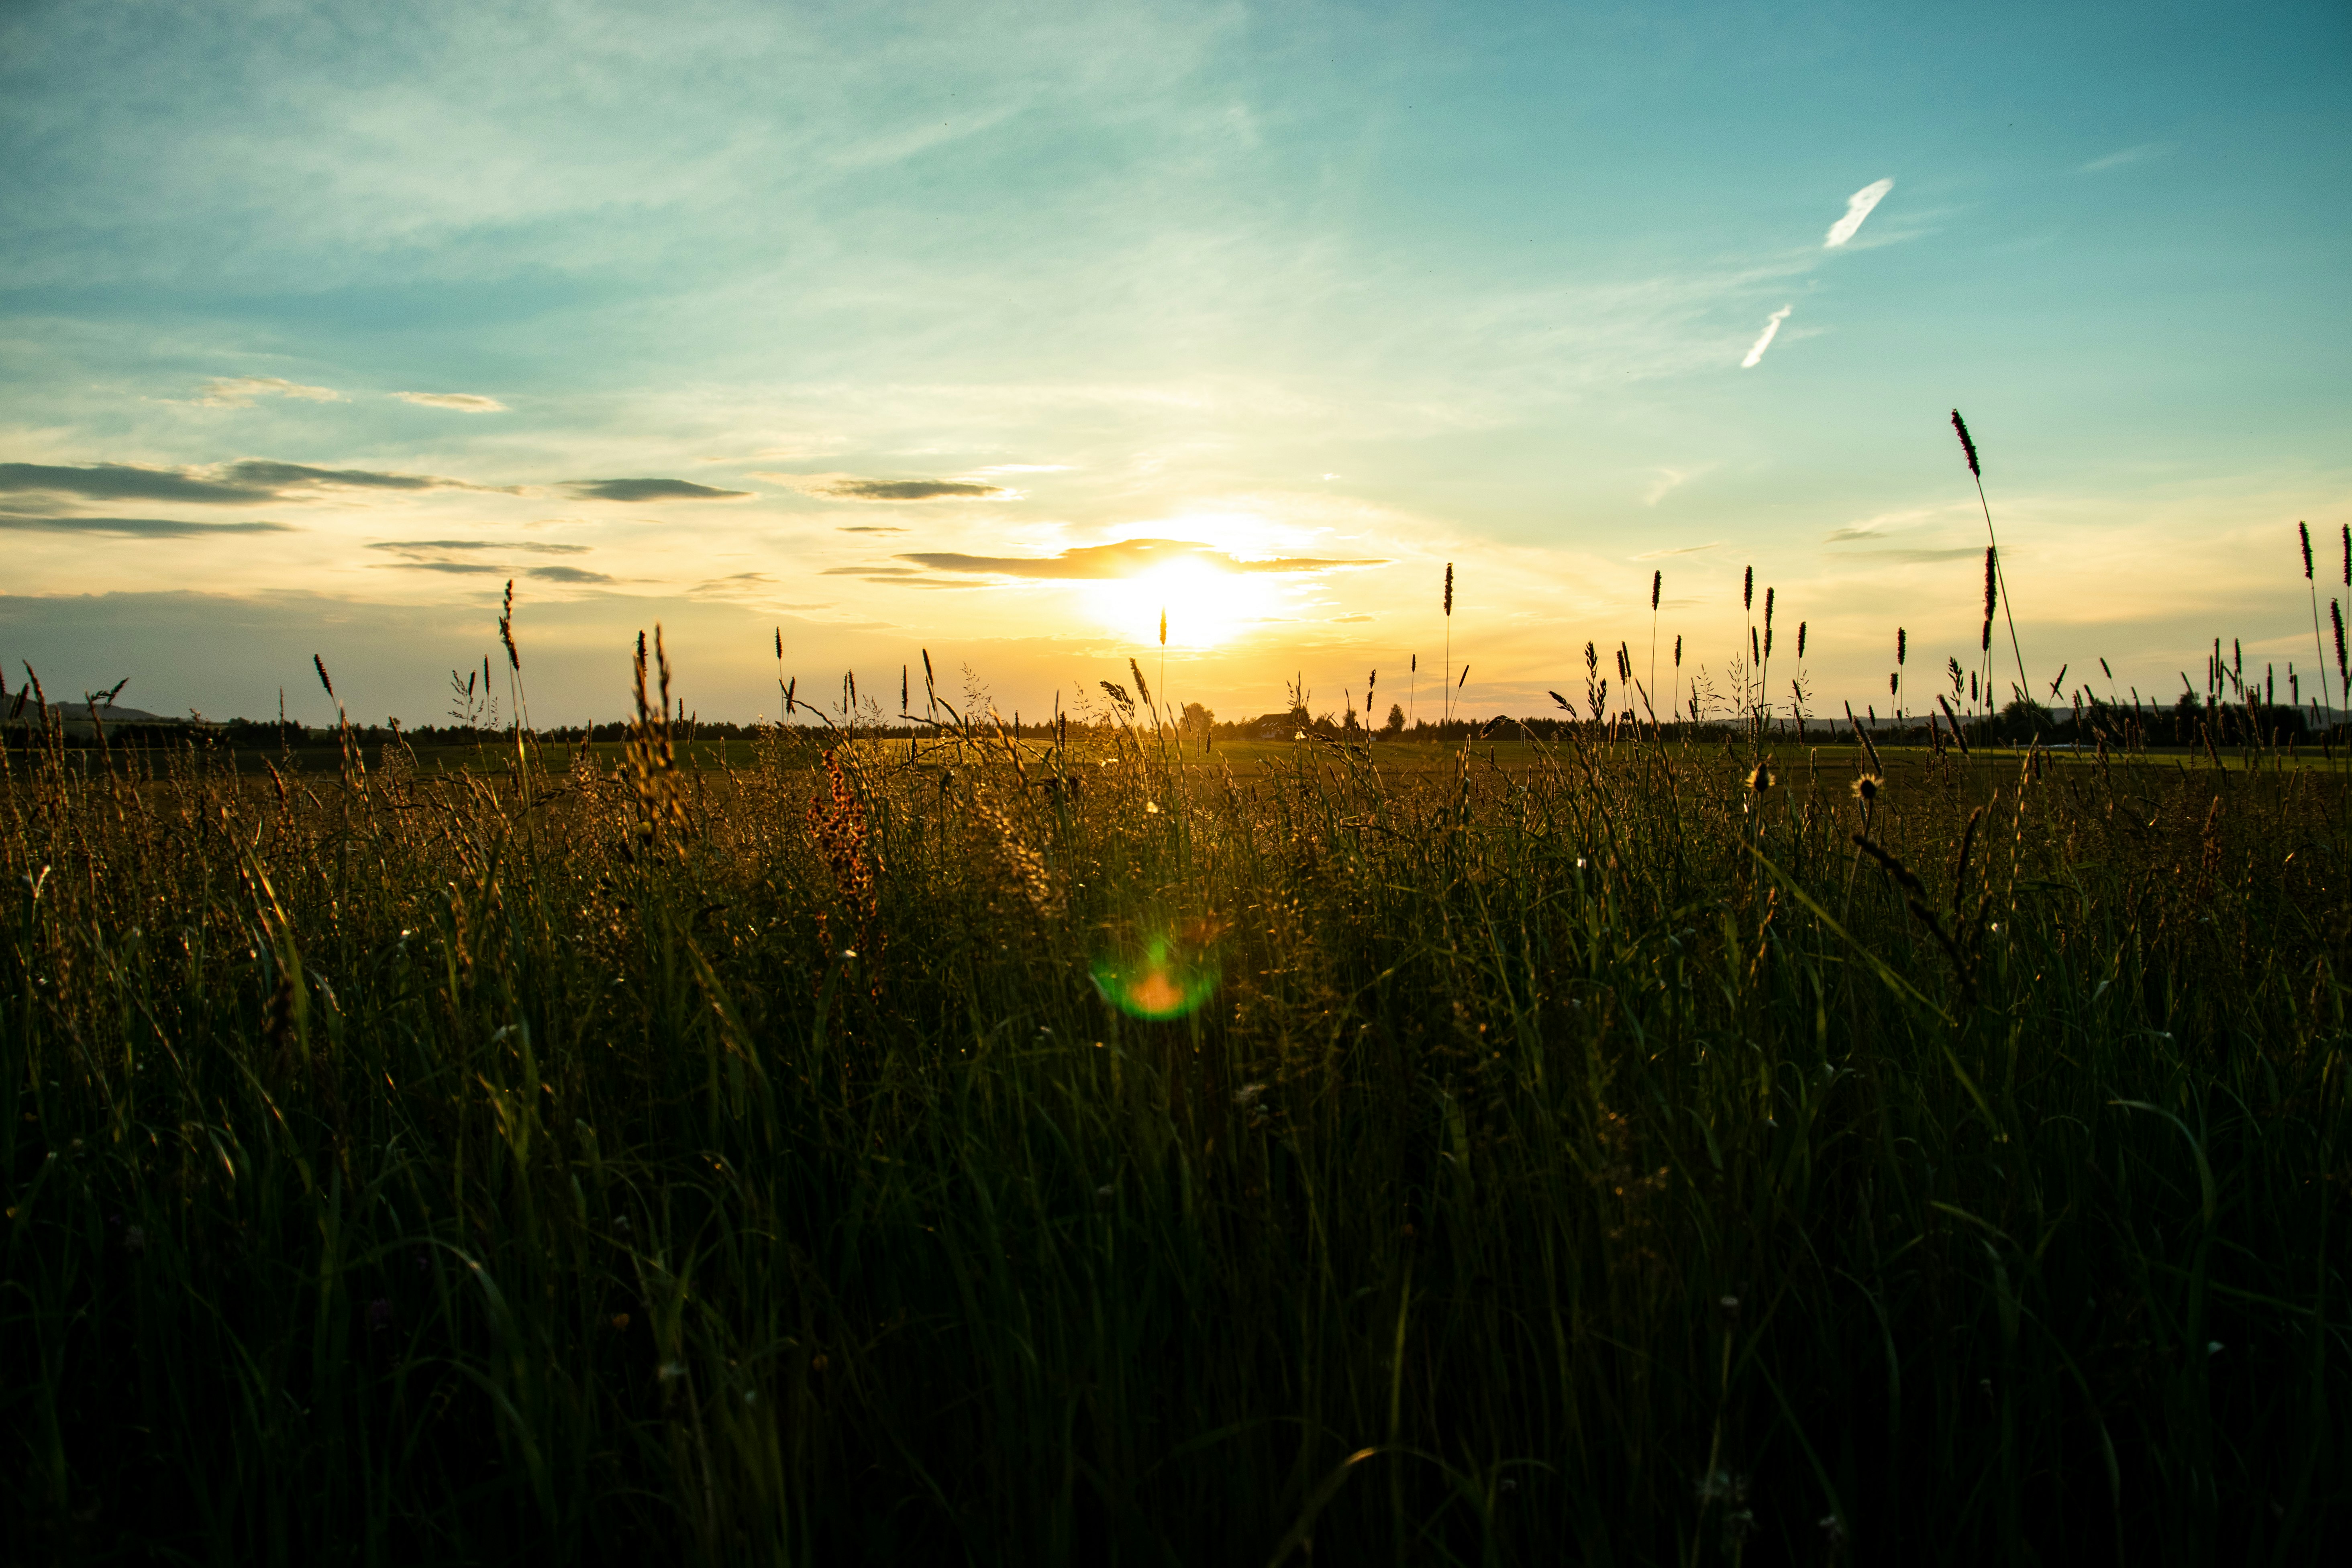 green grass field during sunset